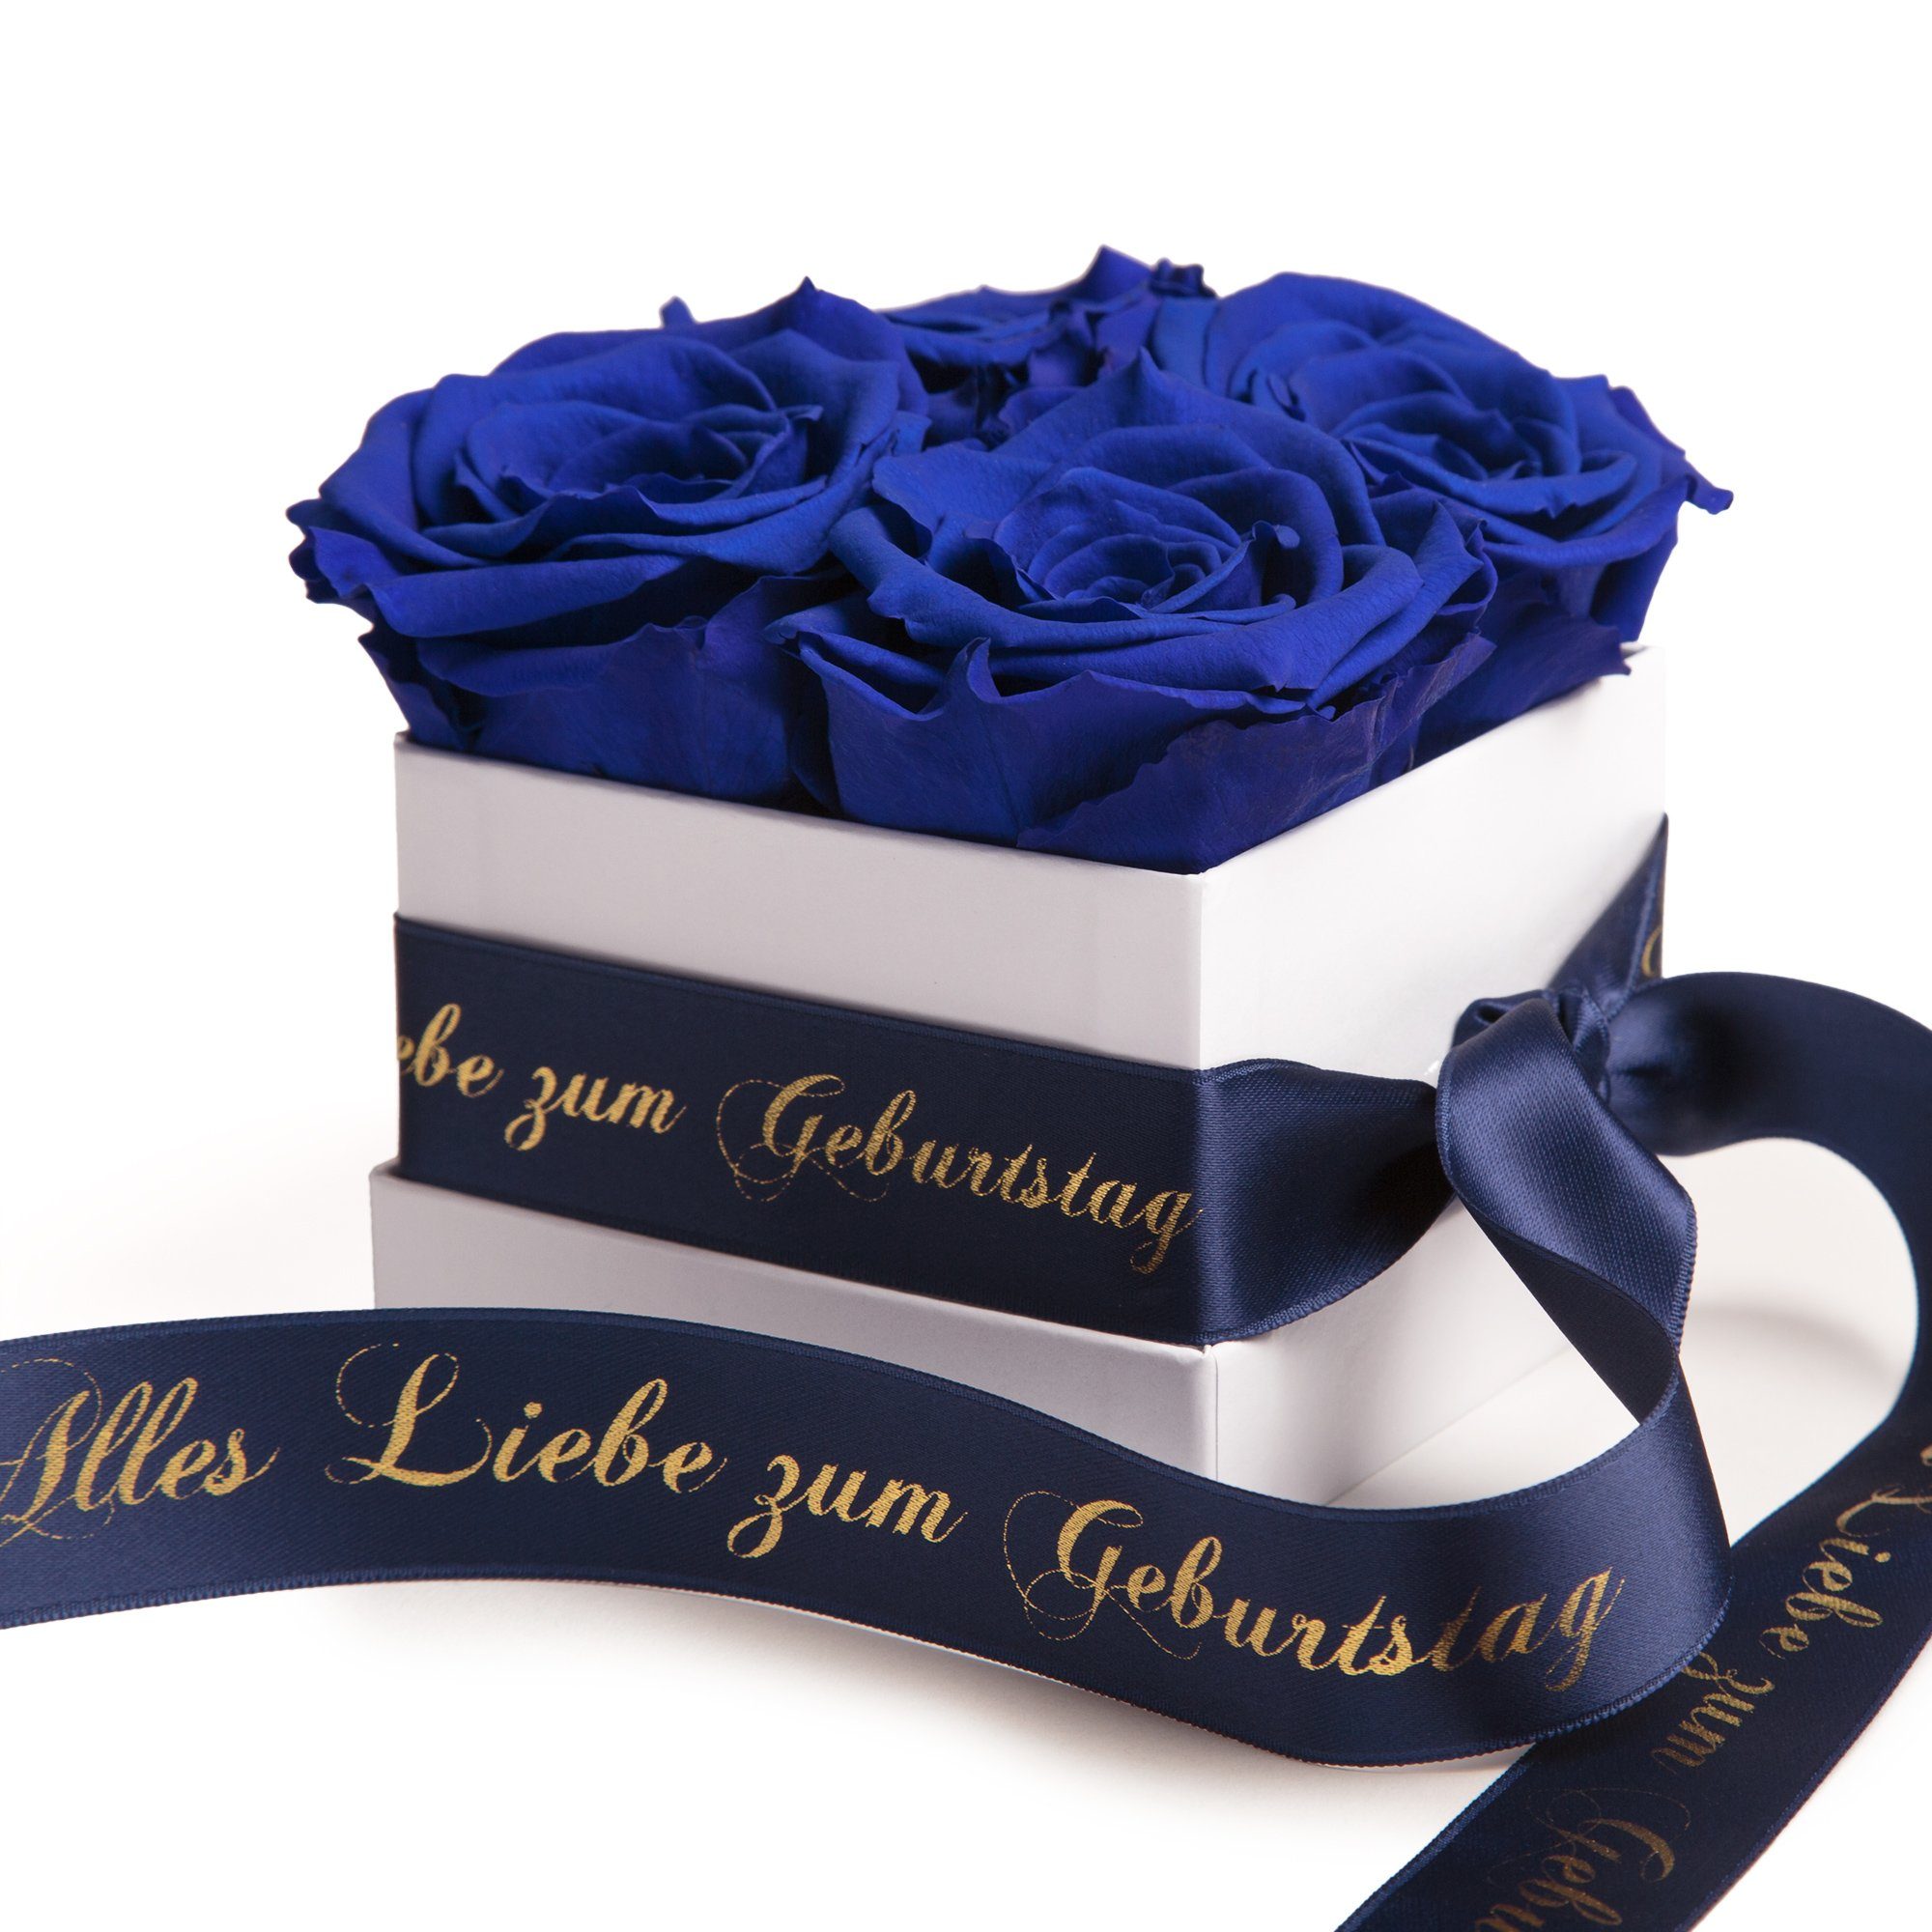 ROSEMARIE SCHULZ Heidelberg Dekoobjekt Rosenbox zum bis 3 Alles Infinity Blumen Rose Echte Geburtstag Liebe blau zu Jahre haltbar Geschenk